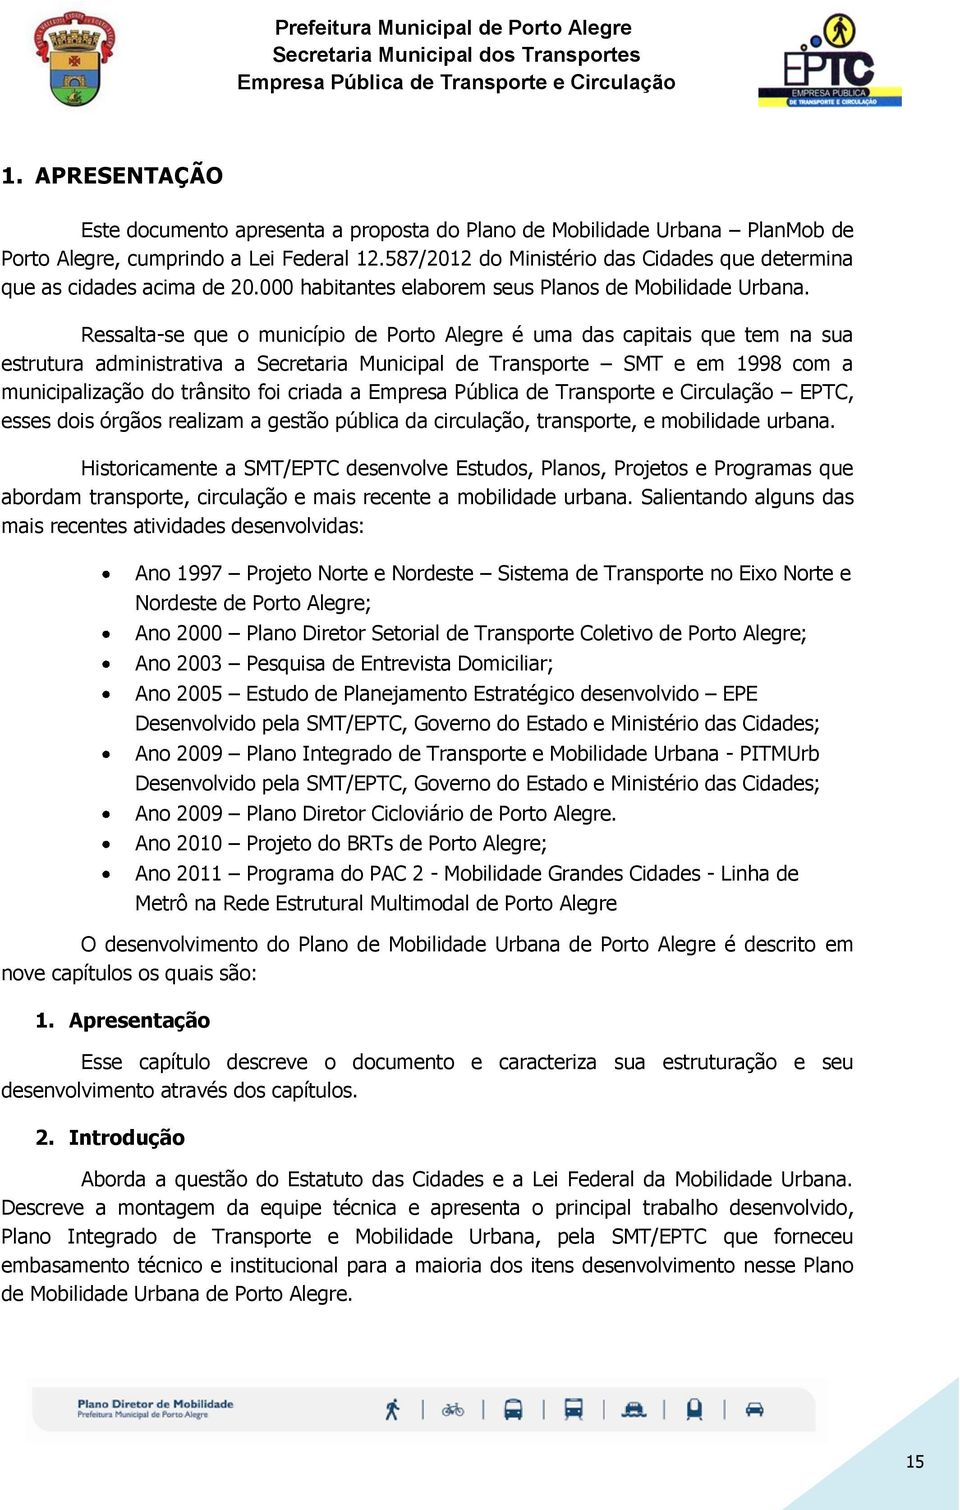 Ressalta-se que o município de Porto Alegre é uma das capitais que tem na sua estrutura administrativa a Secretaria Municipal de Transporte SMT e em 1998 com a municipalização do trânsito foi criada